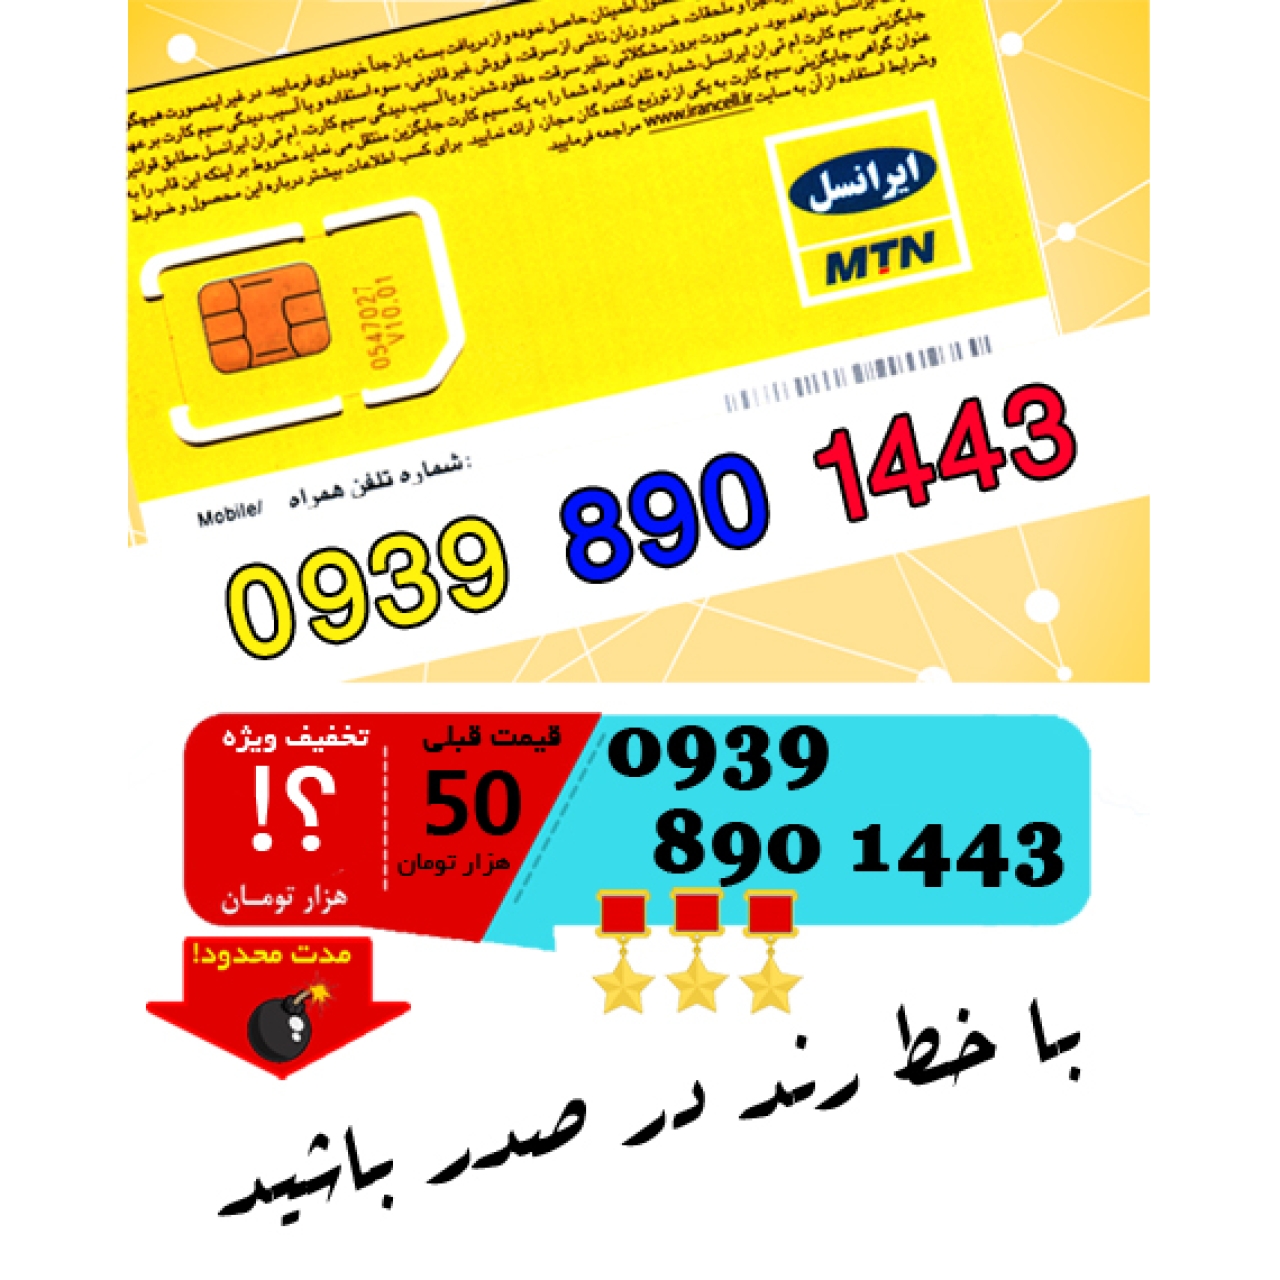 سیم کارت اعتباری ایرانسل 09398901443